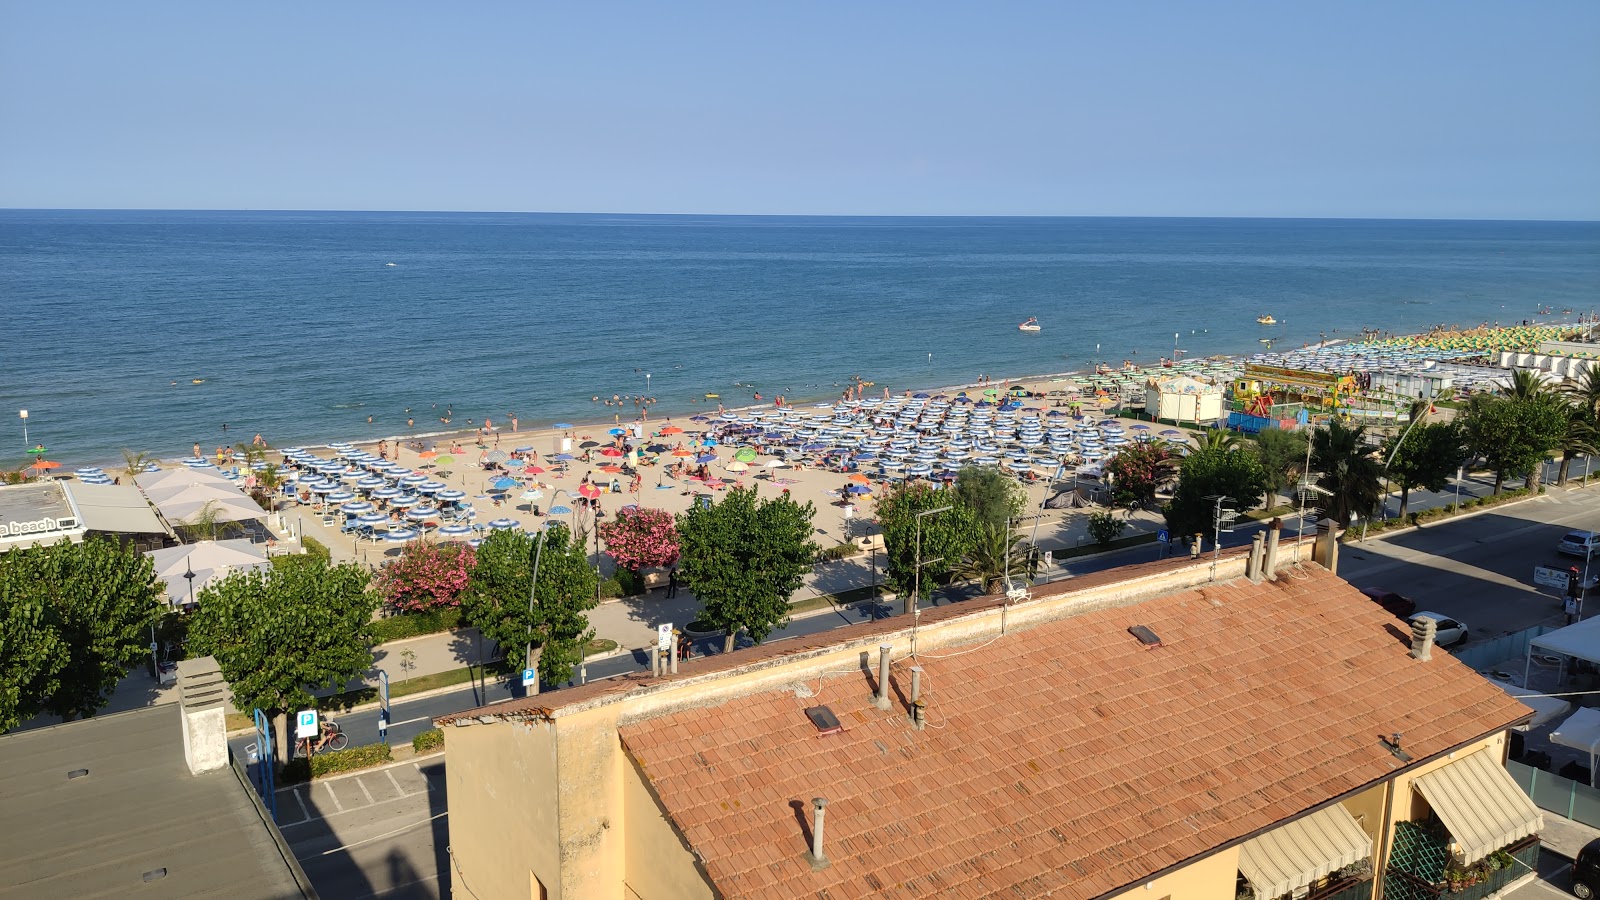 Foto de Spiaggia di Alba Adriatica com alto nível de limpeza